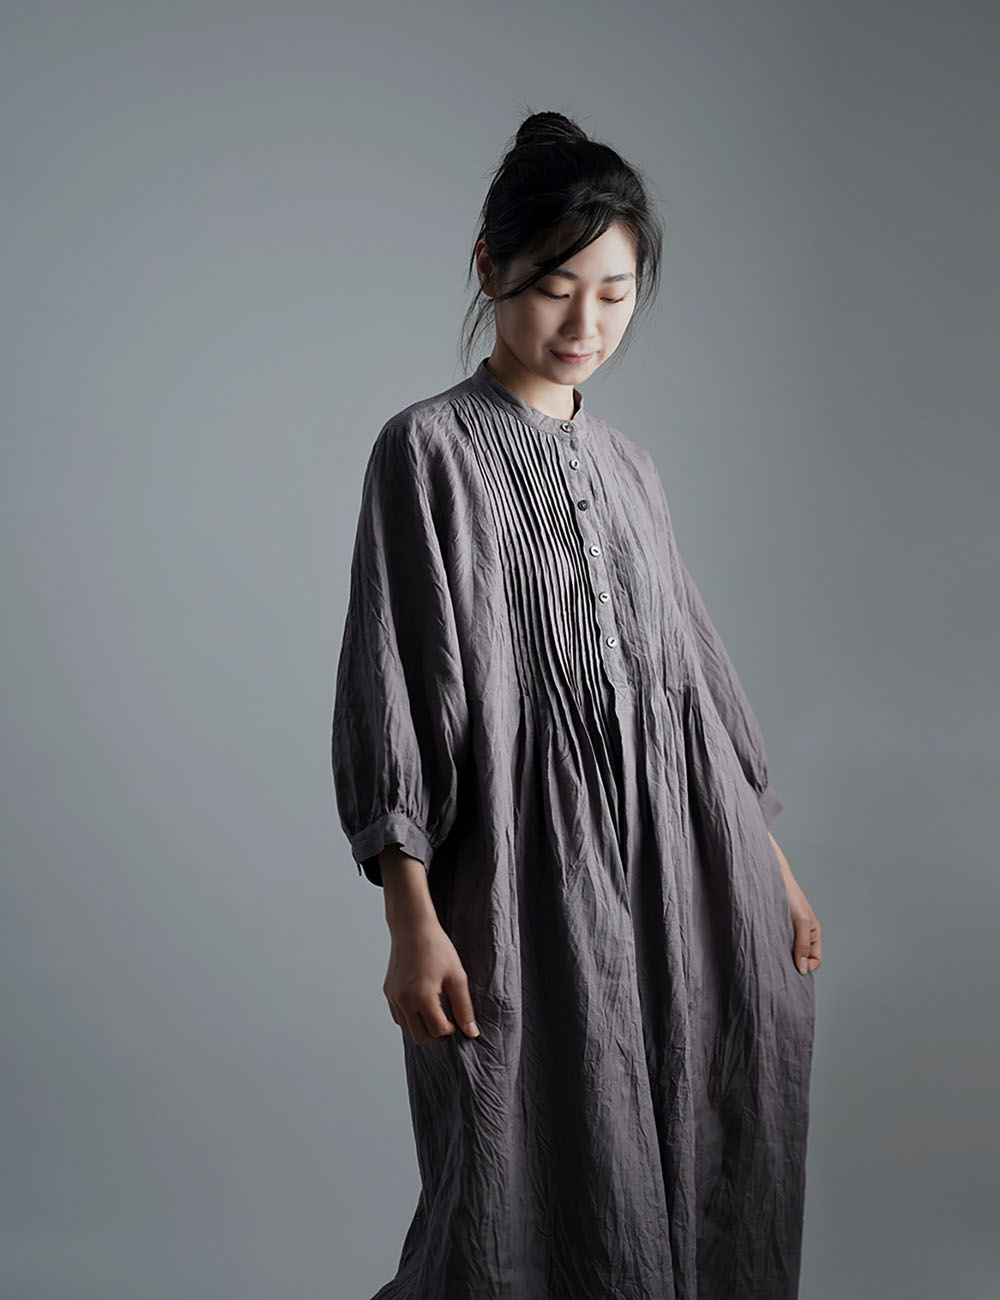 wafu 】 linen clothing